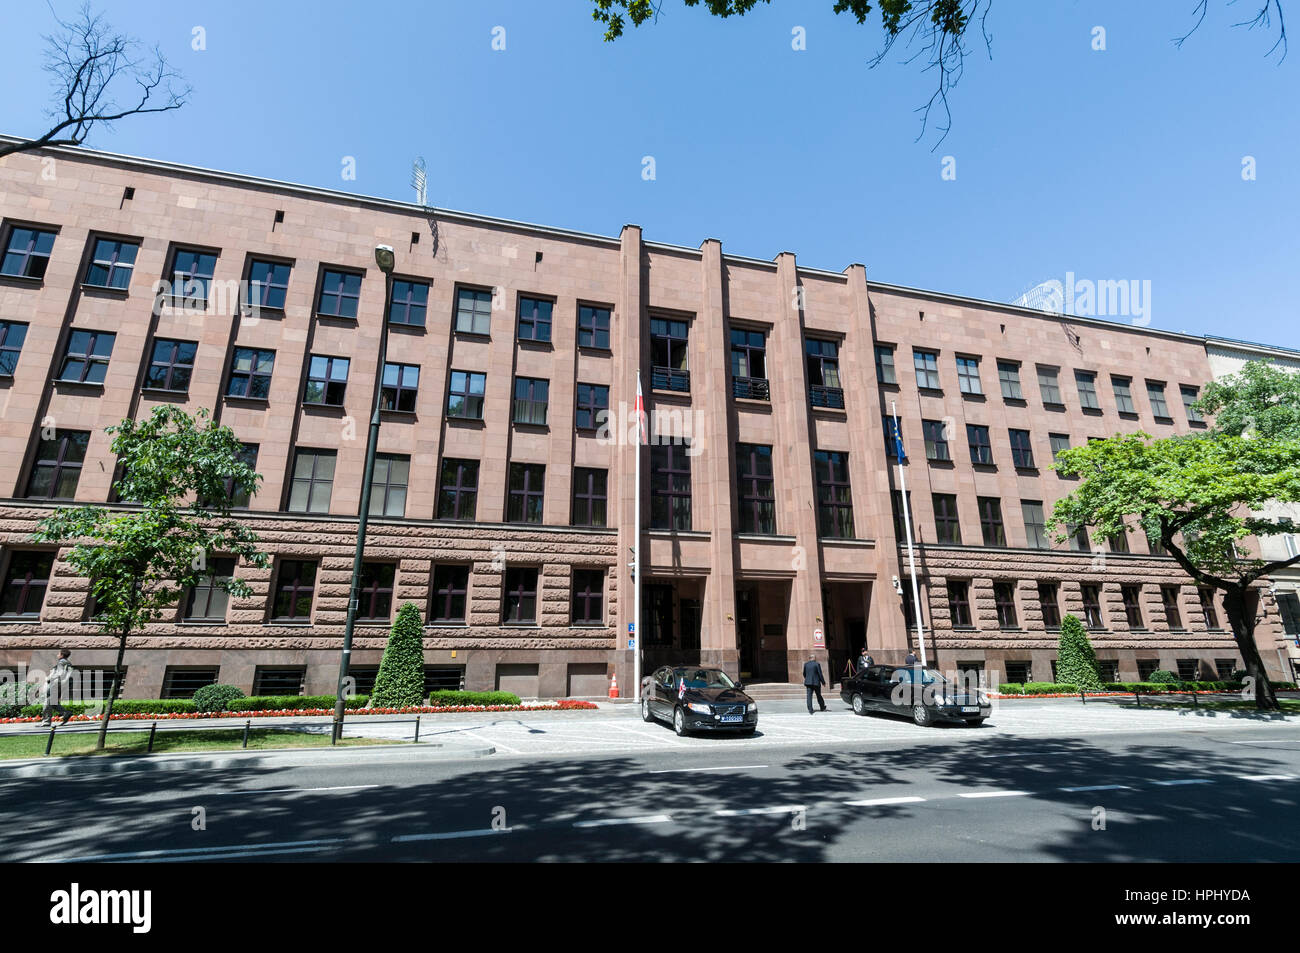 Ministersto Spraw Zagranicznych - Ministry of Foreign Affairs in Al   Szucha Street,Warsaw,Poland Stock Photo